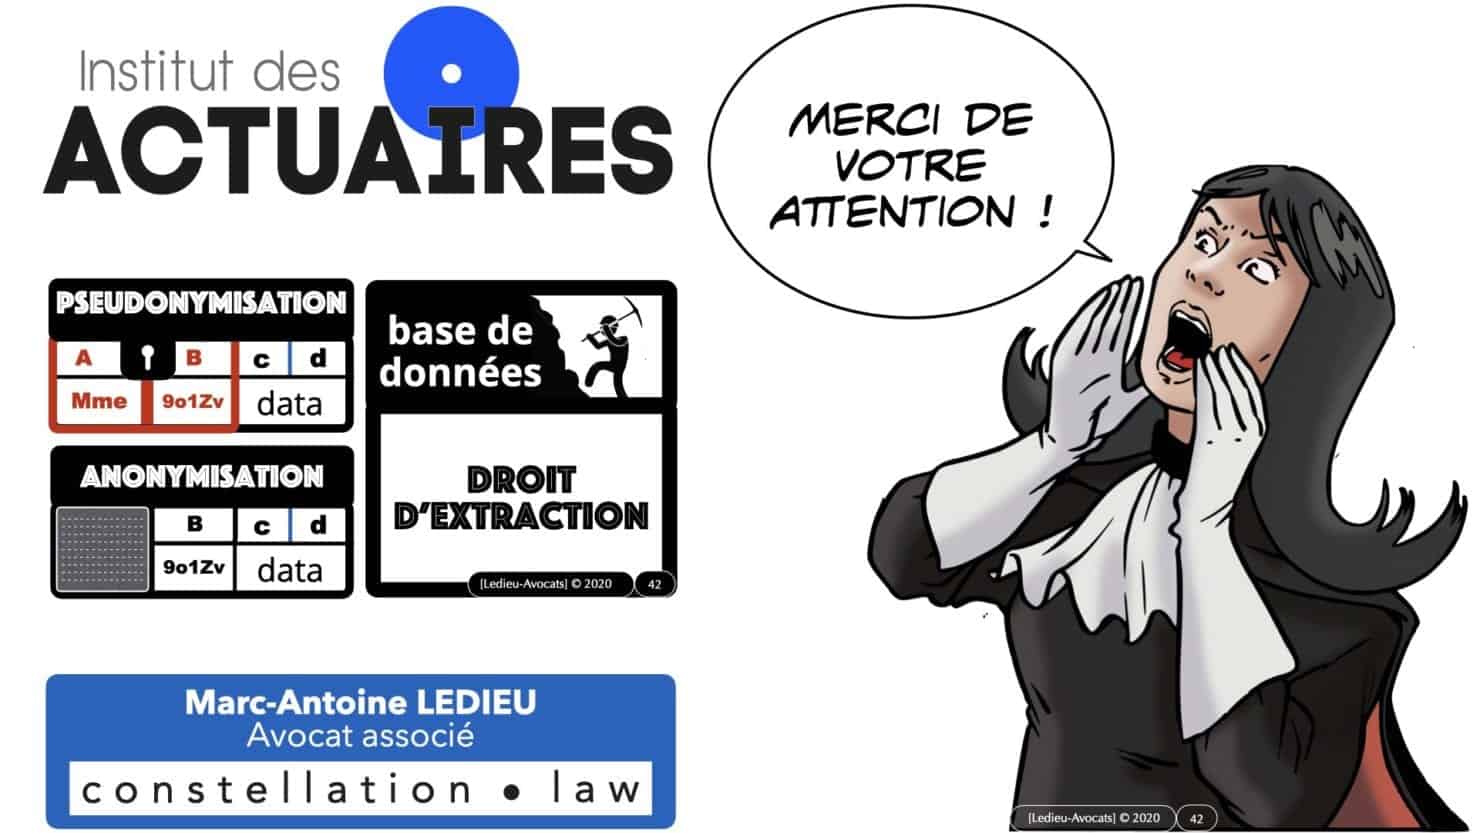 309 pseudonymisation et anonymisation des bases de données pour ACTUAIRE *16:9* © Ledieu-avocat 01-11-2020.042